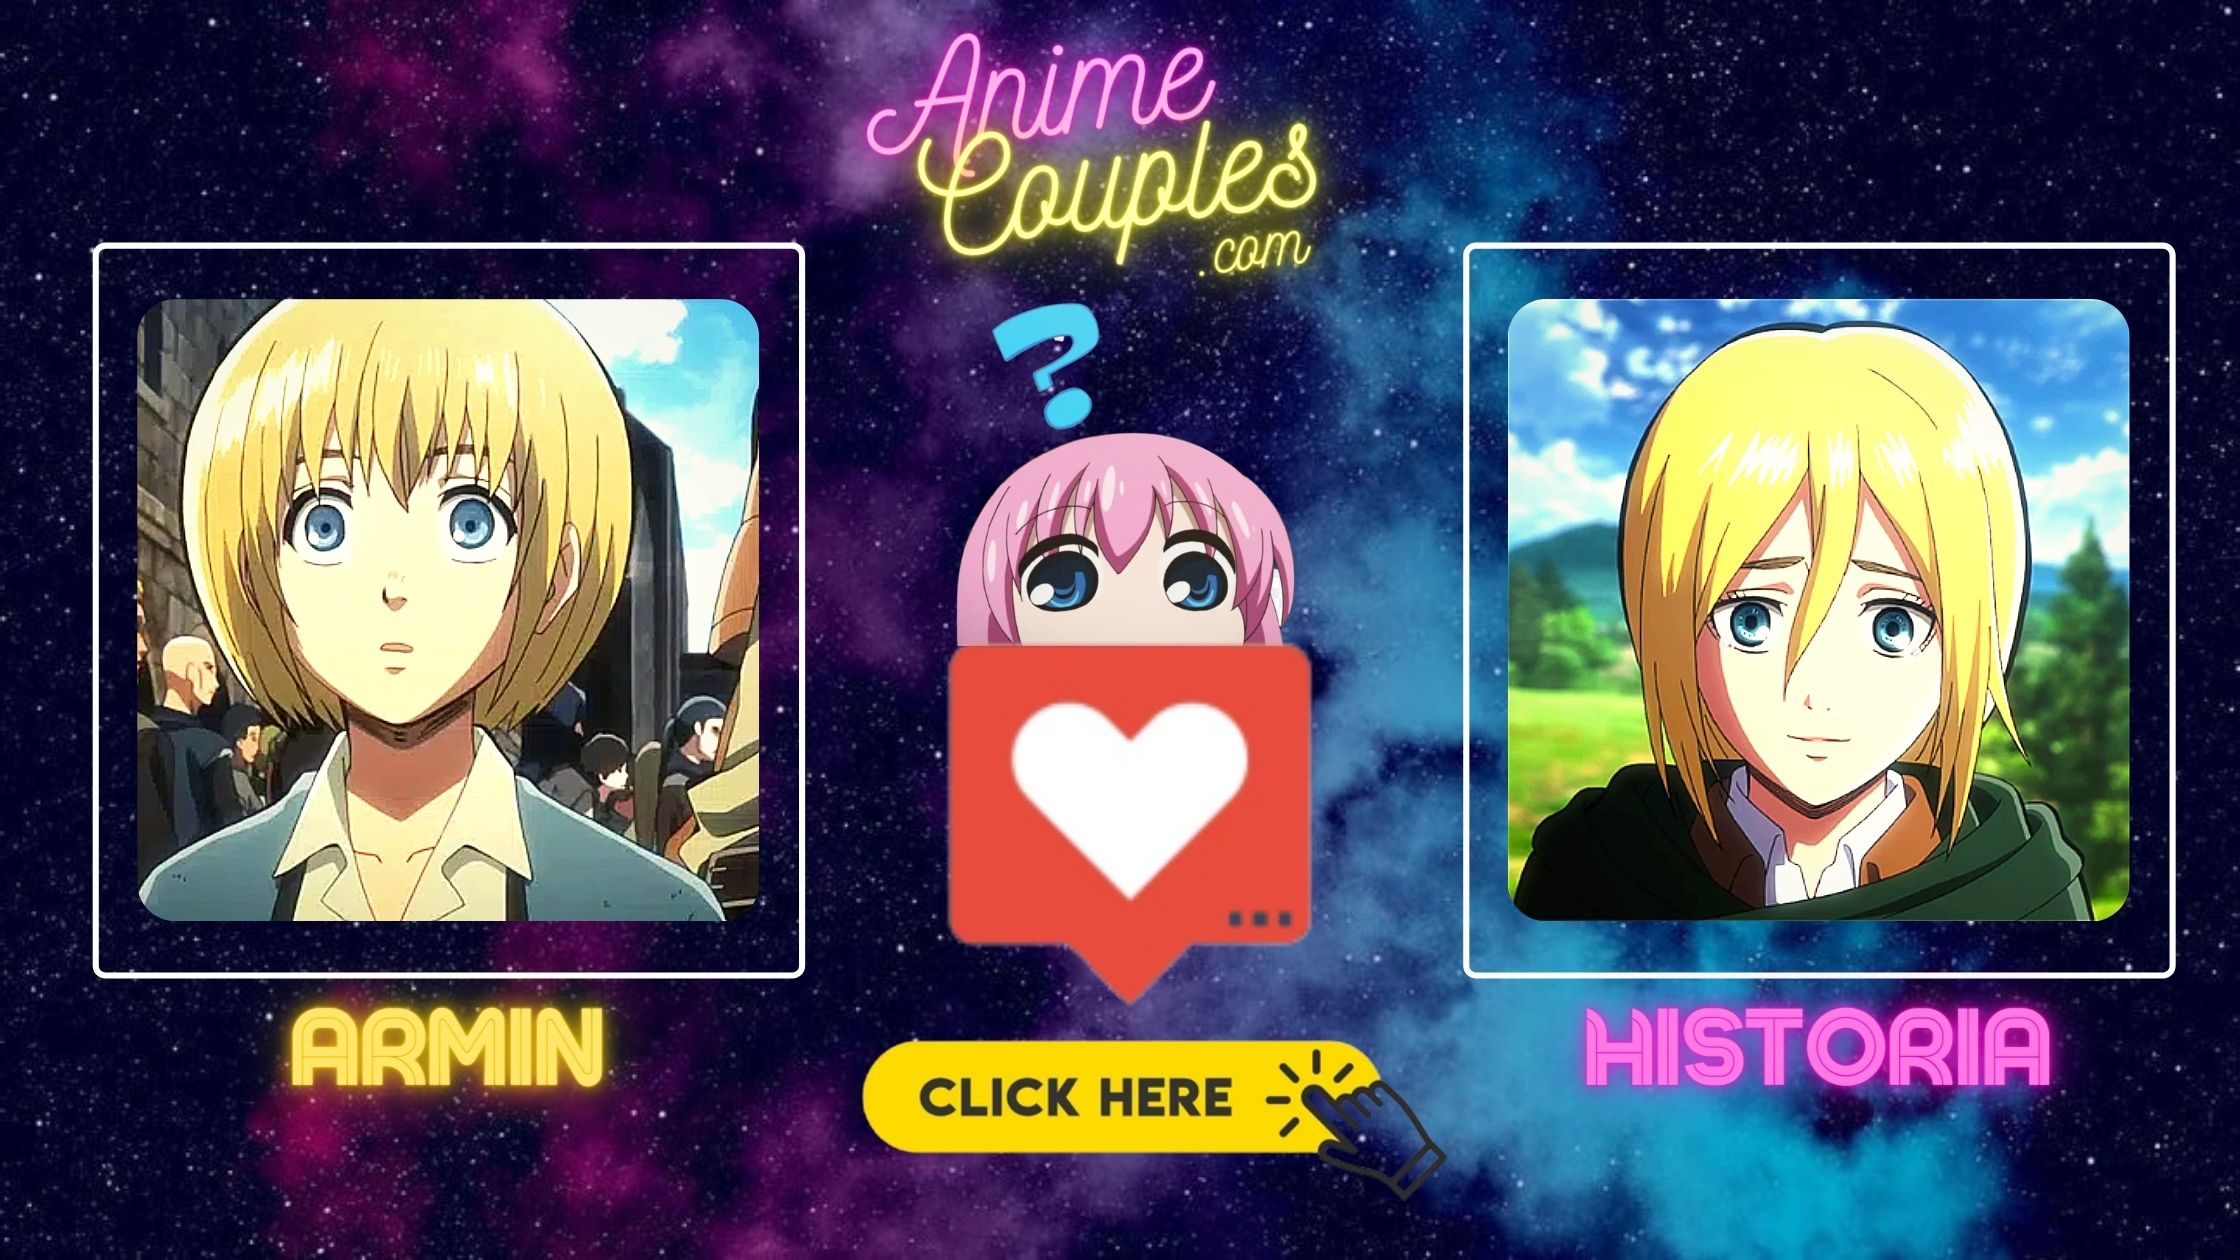 Armin x Historia - Attack couples